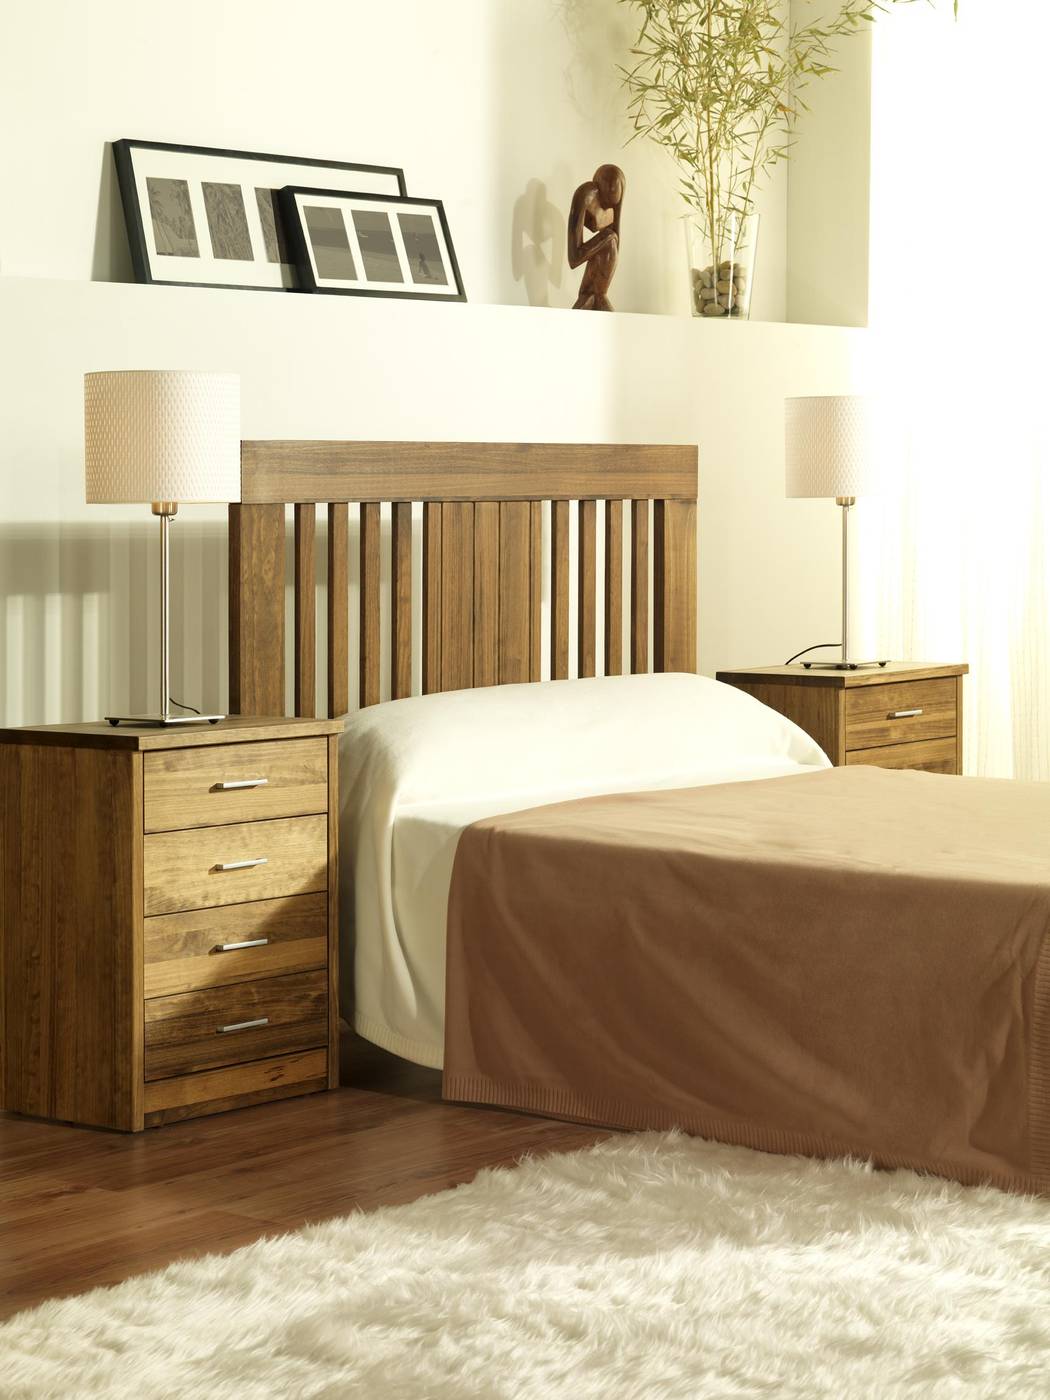 Cabezal Coral NB - Cabecero de cama de madera maciza, disponible en varias medidas y colores de madera.